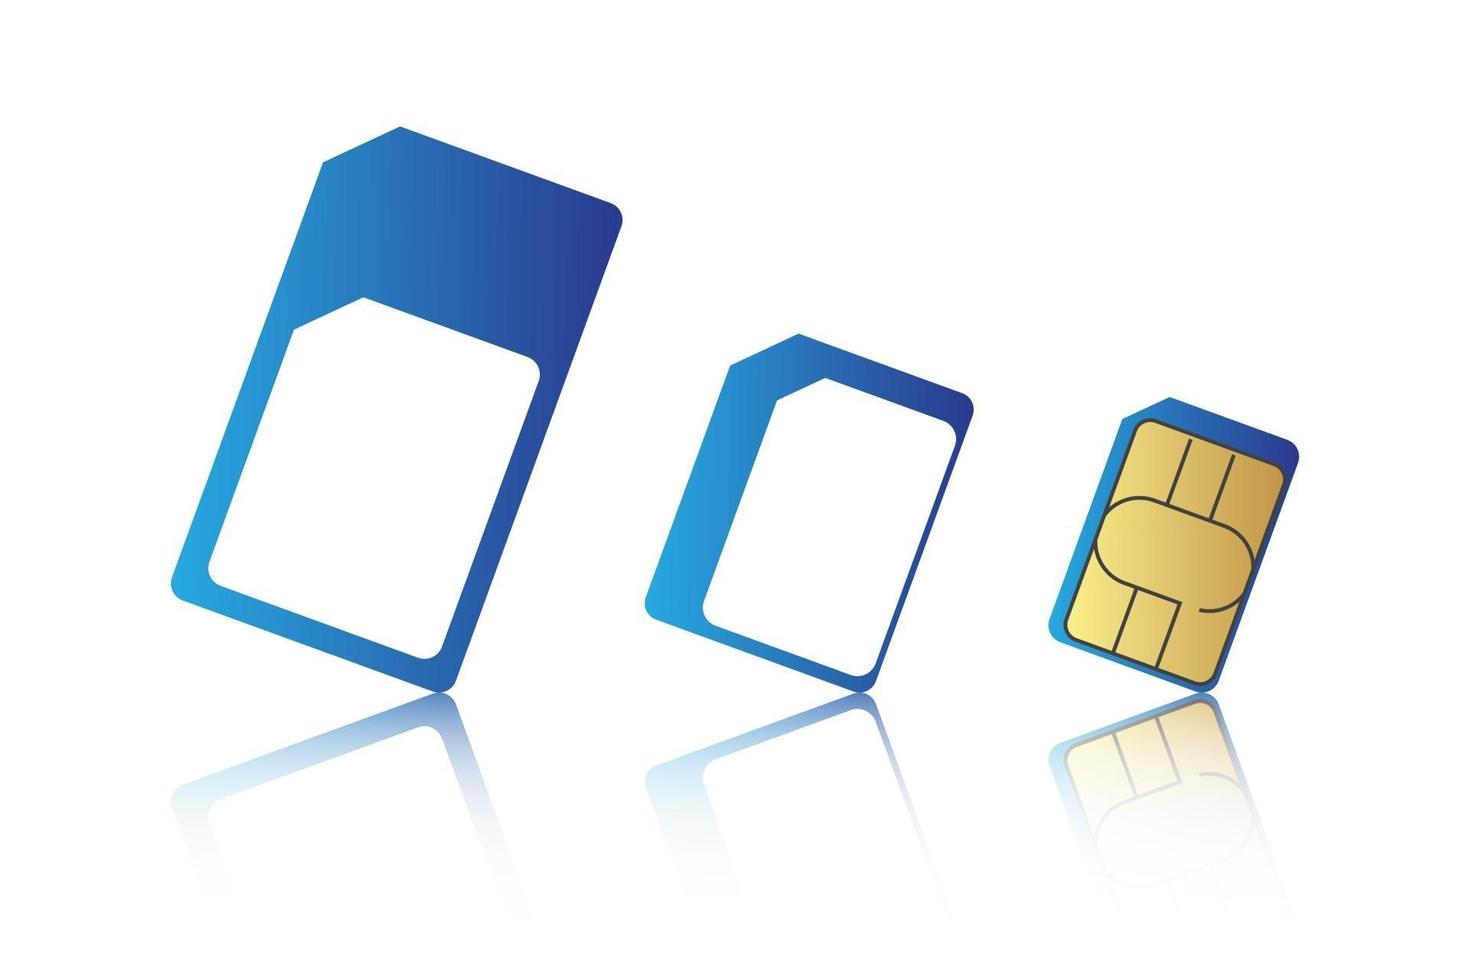 mobiltelefon SIM-kort som standard mikro- och nano-SIM-kort vektorillustration vektor